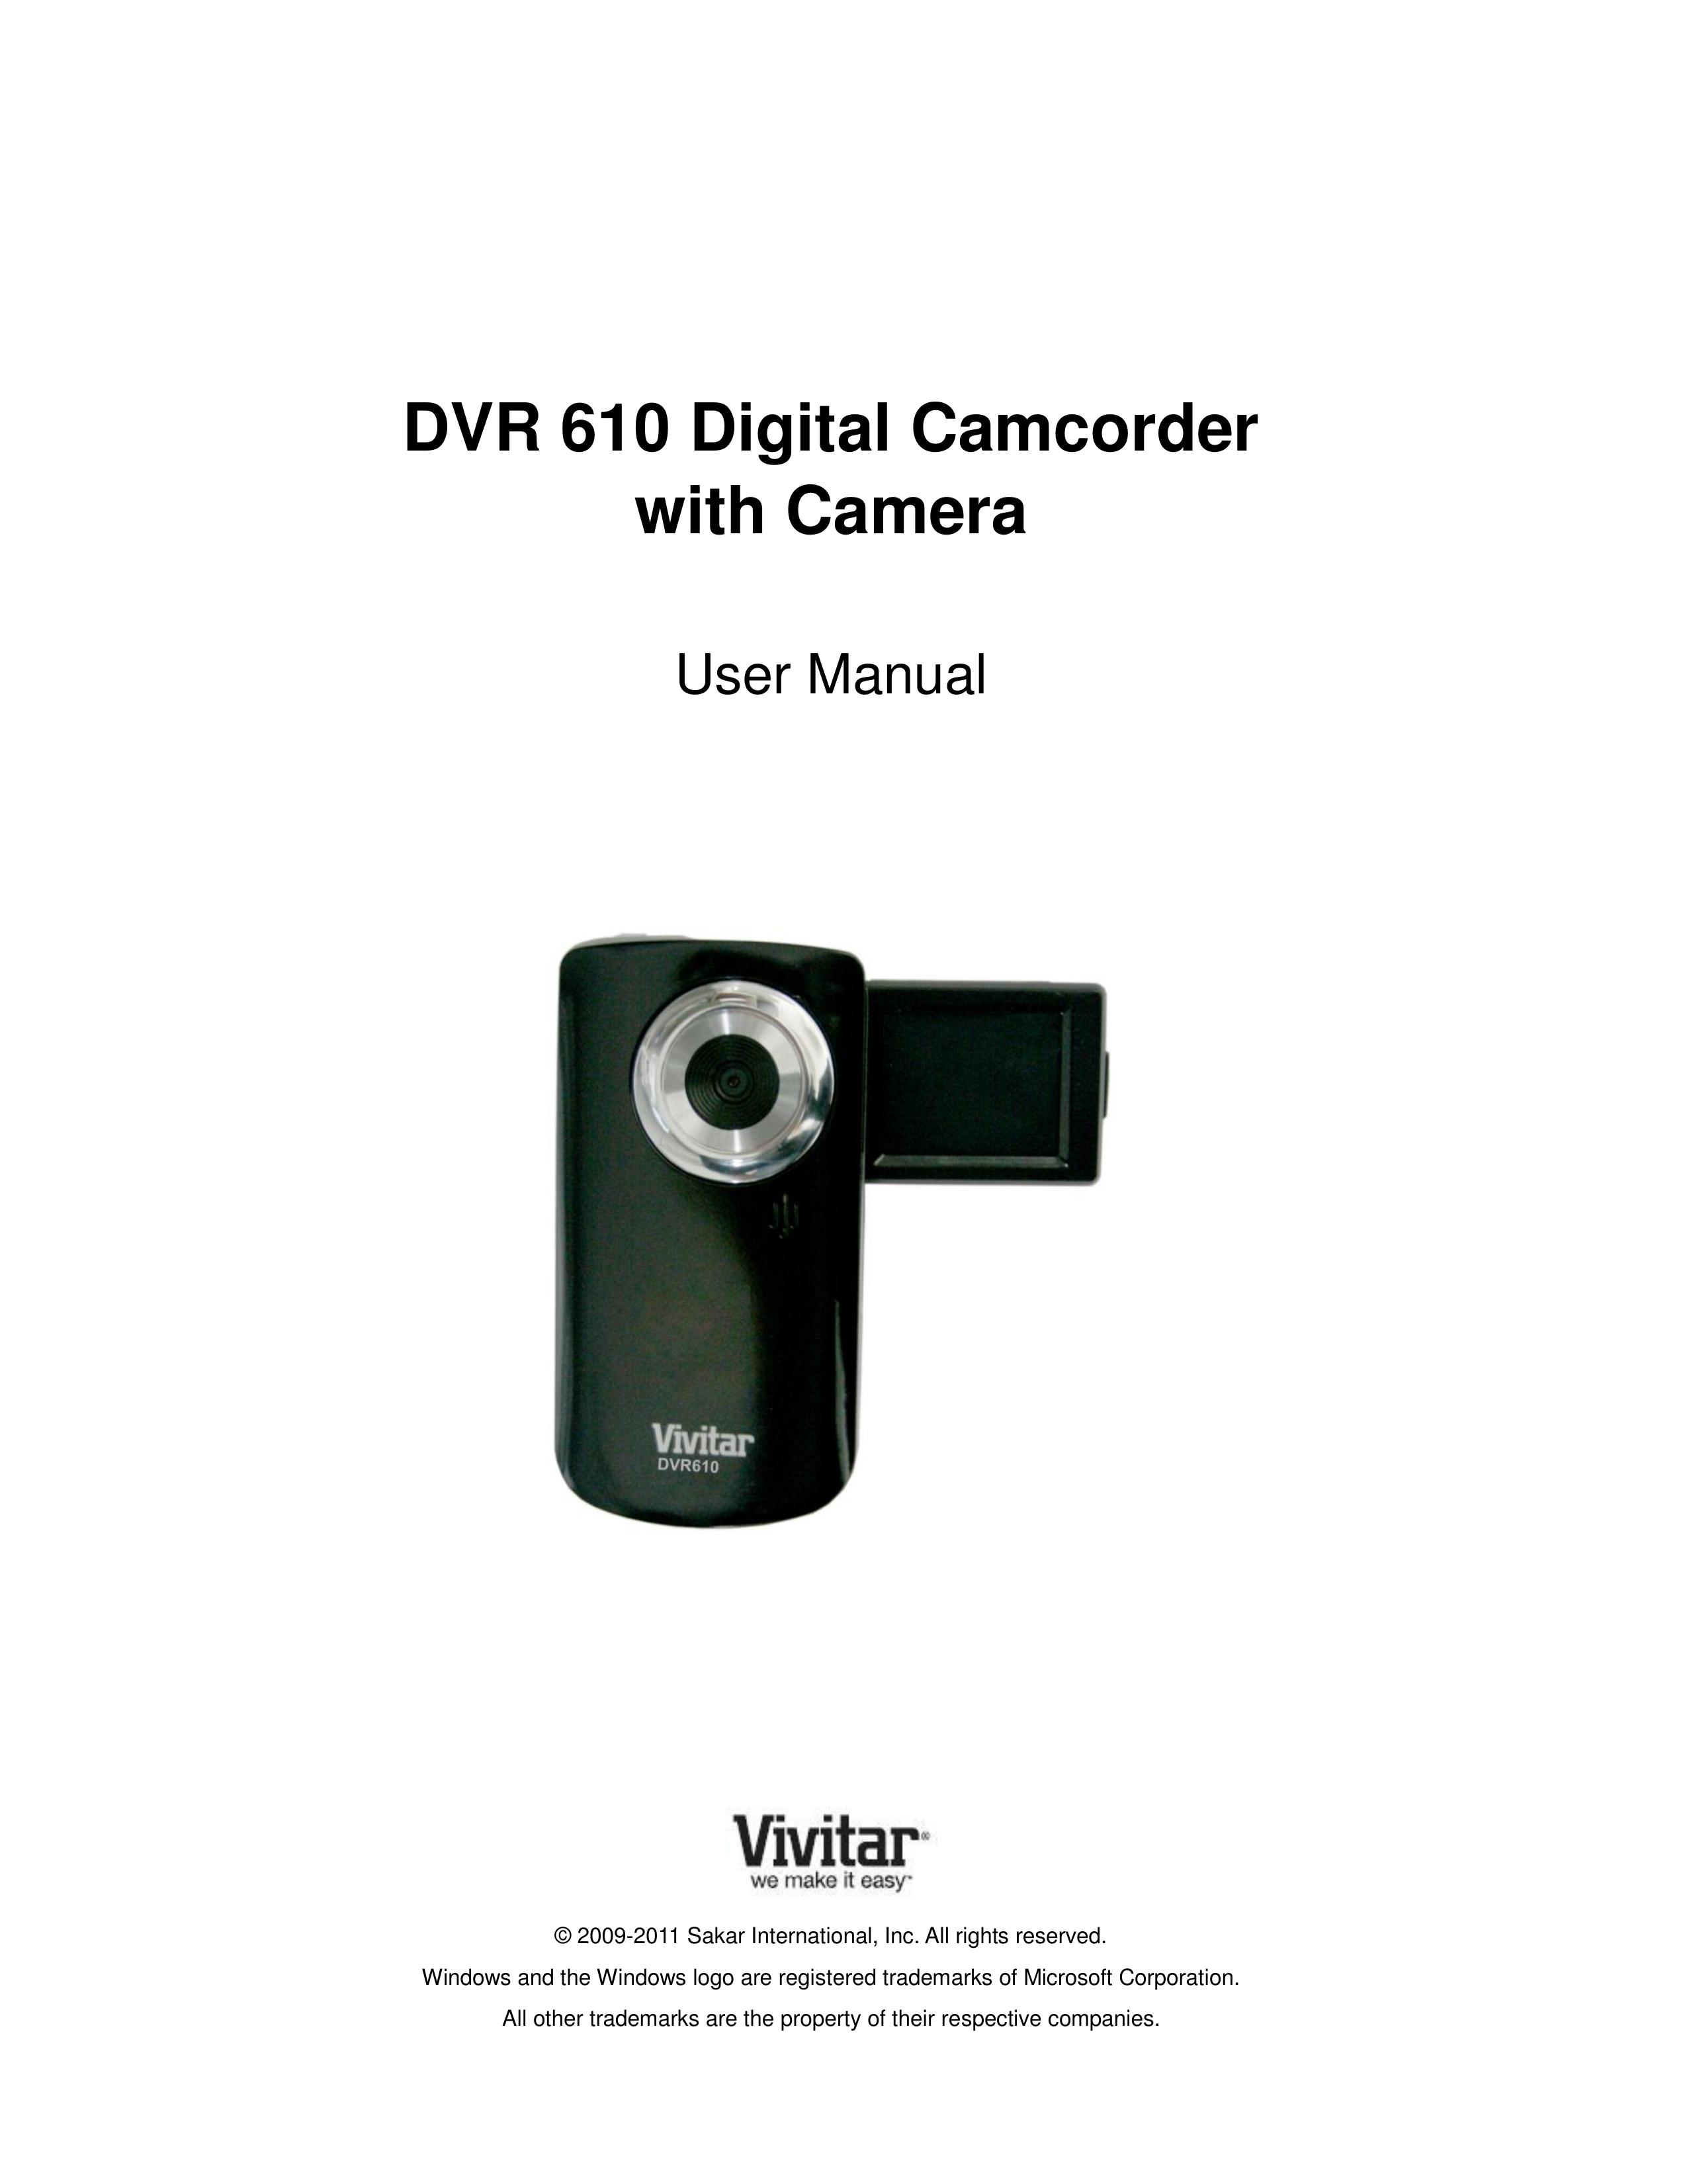 Vivitar DVR 610 Camcorder User Manual